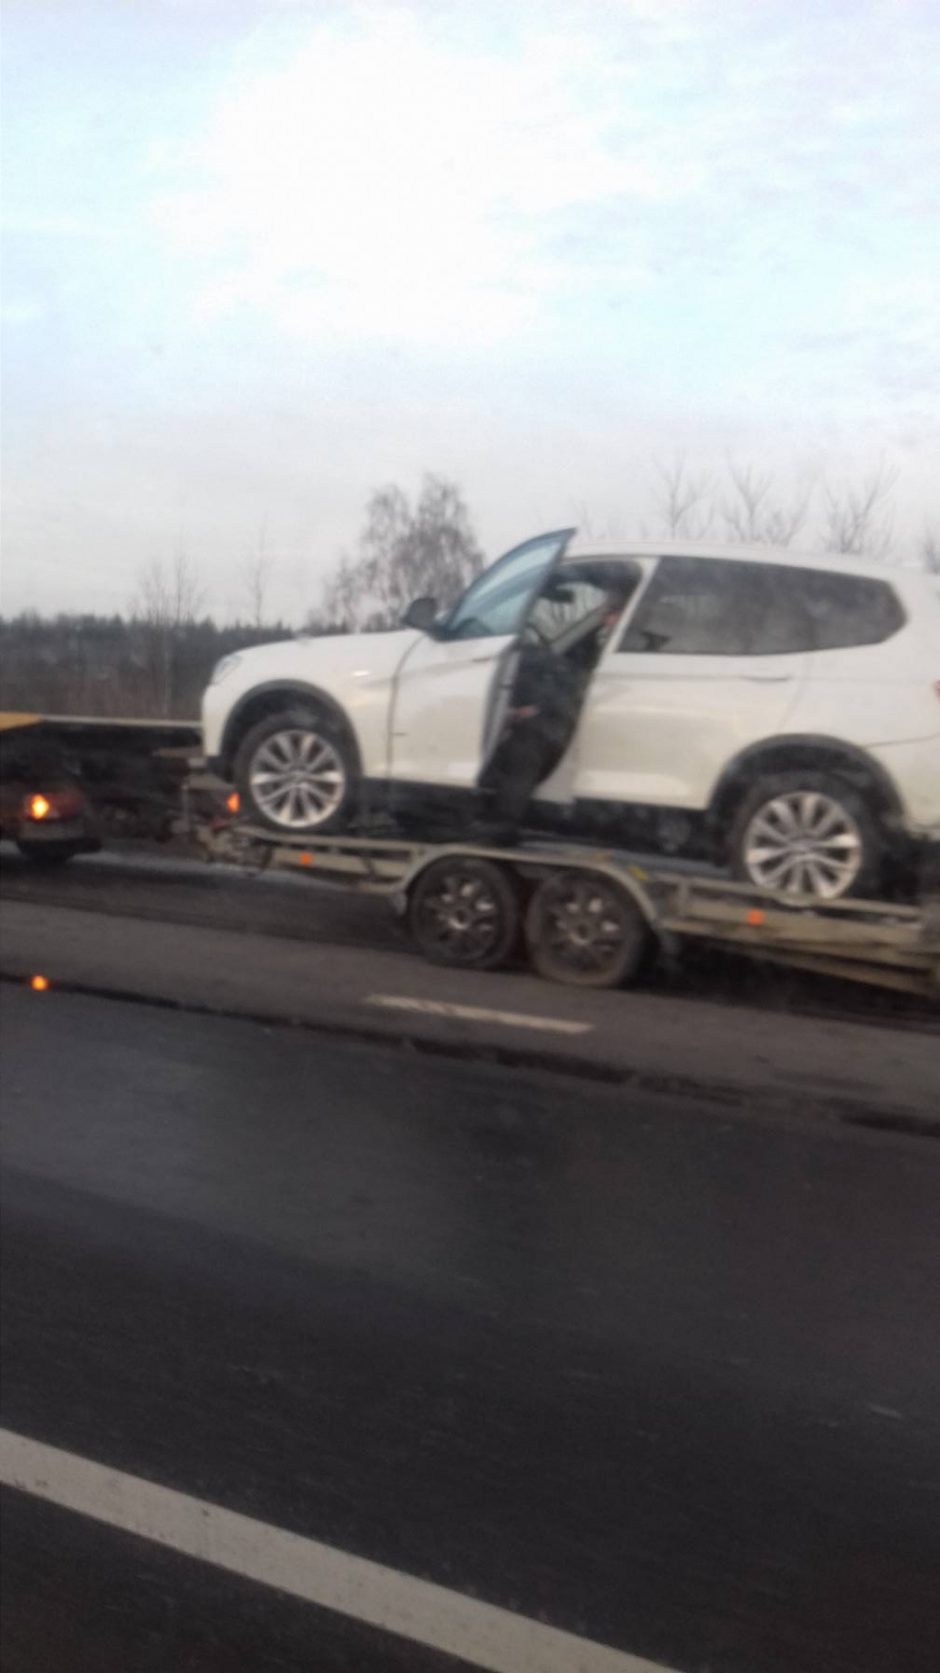 Kaune – dar viena avarija: po smūgio į BMW taranavo kelio atitvarus